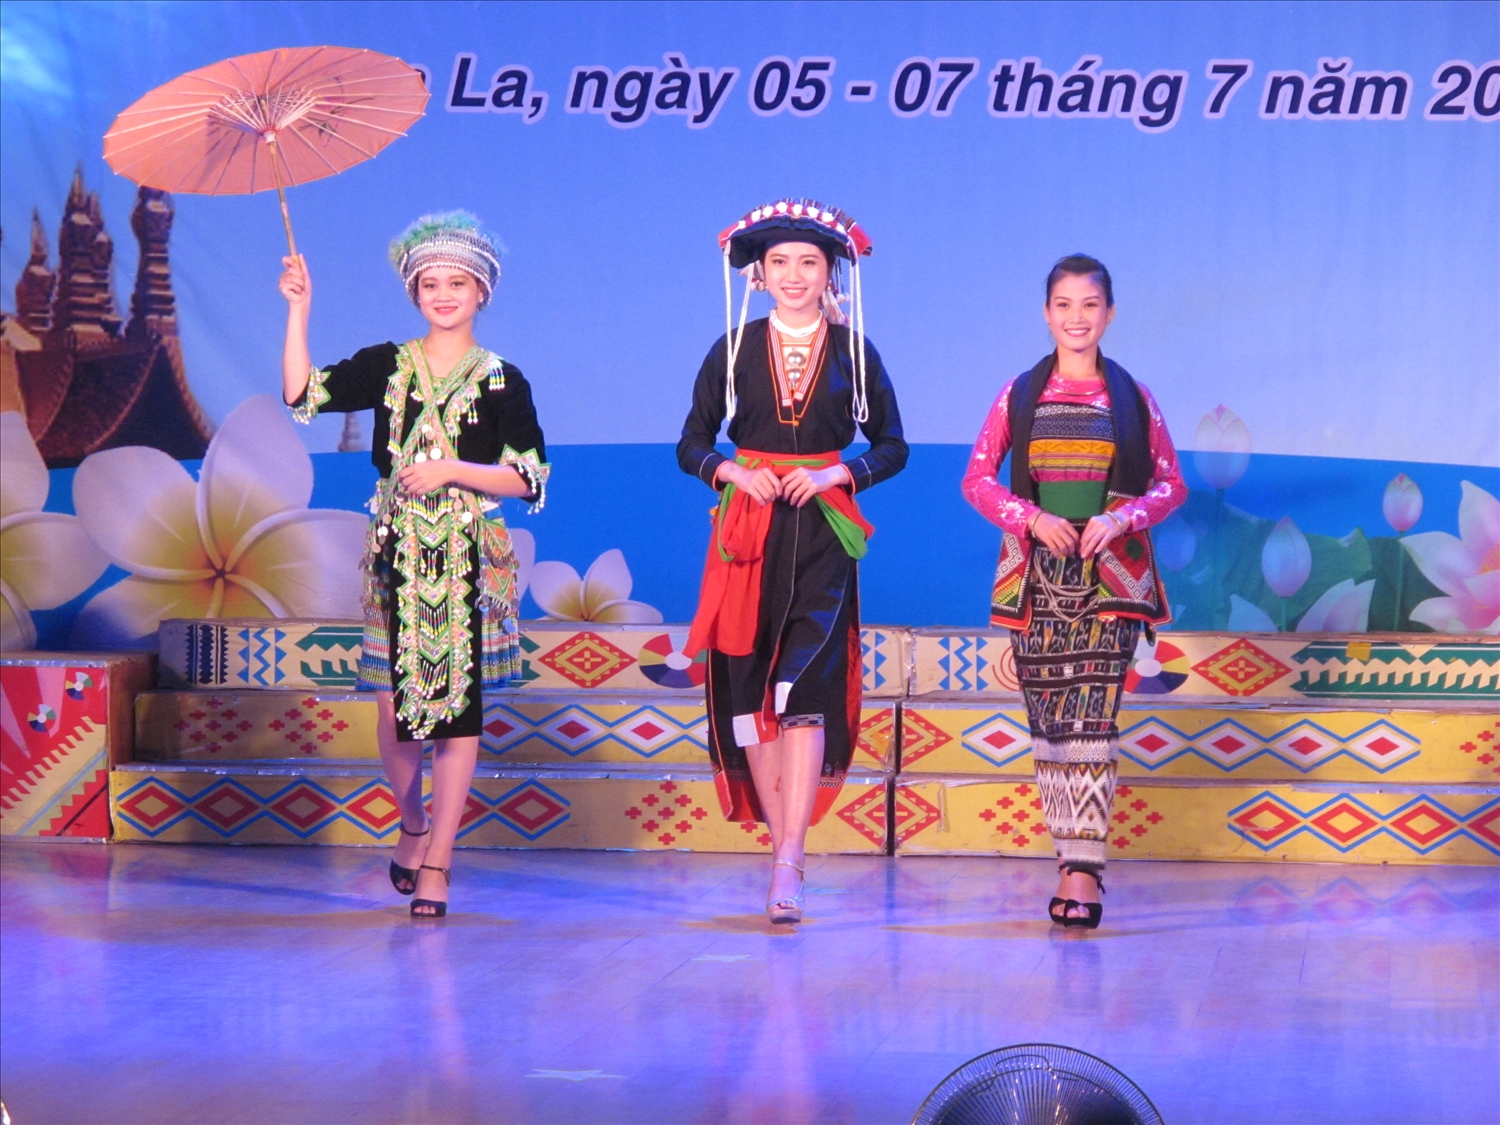 Các cô gái trình diễn trang phục các dân tộc thiểu số Việt Nam